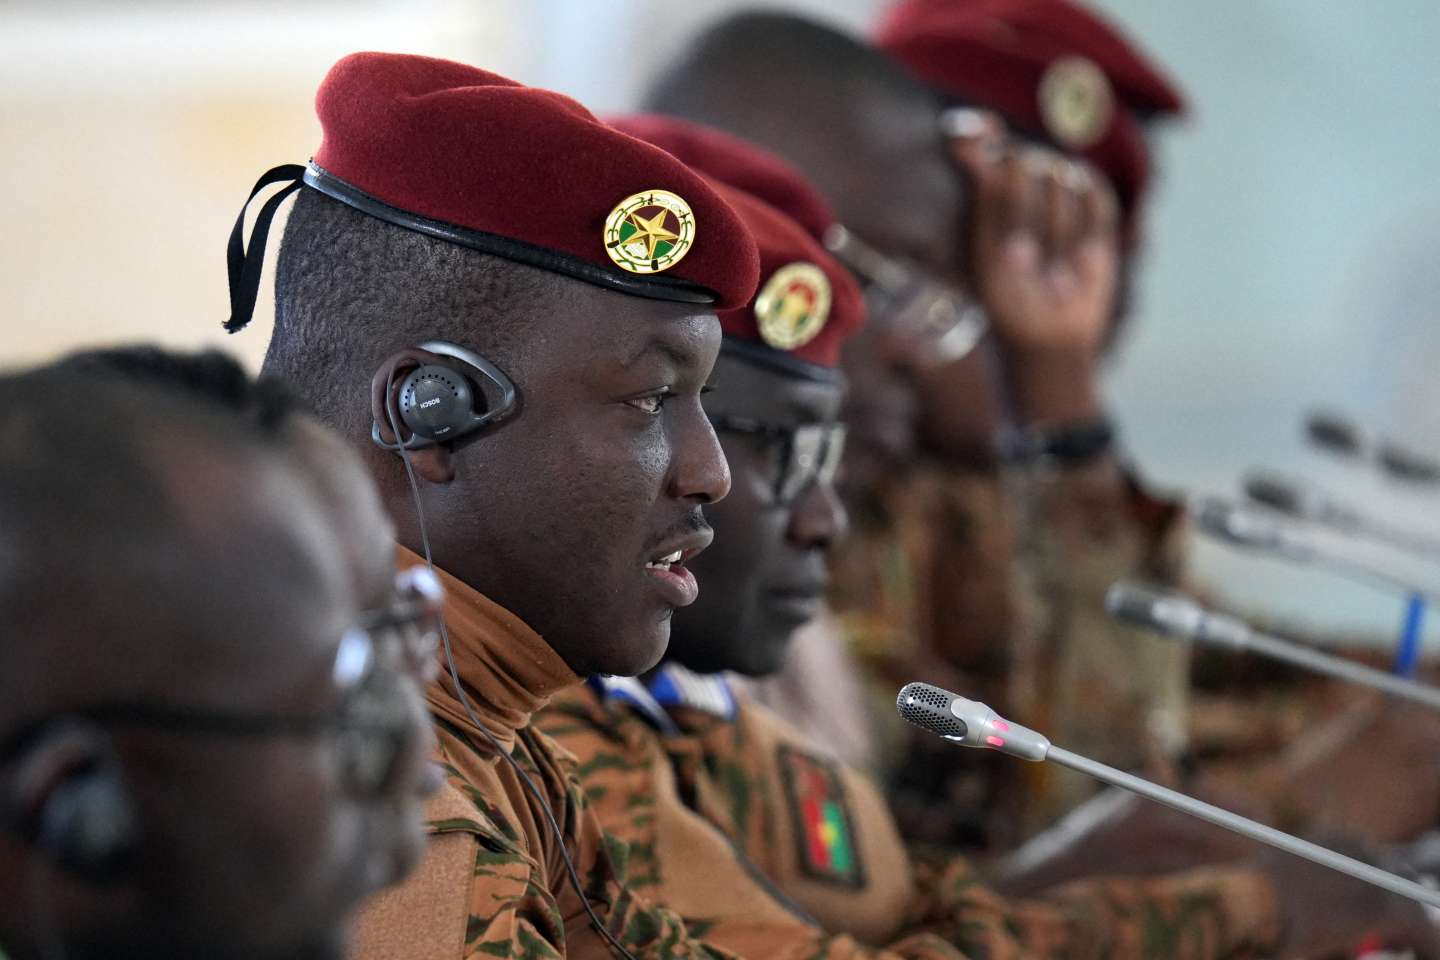 Le Burkina Faso expulse l’attaché militaire français, accusé d’« activités subversives »